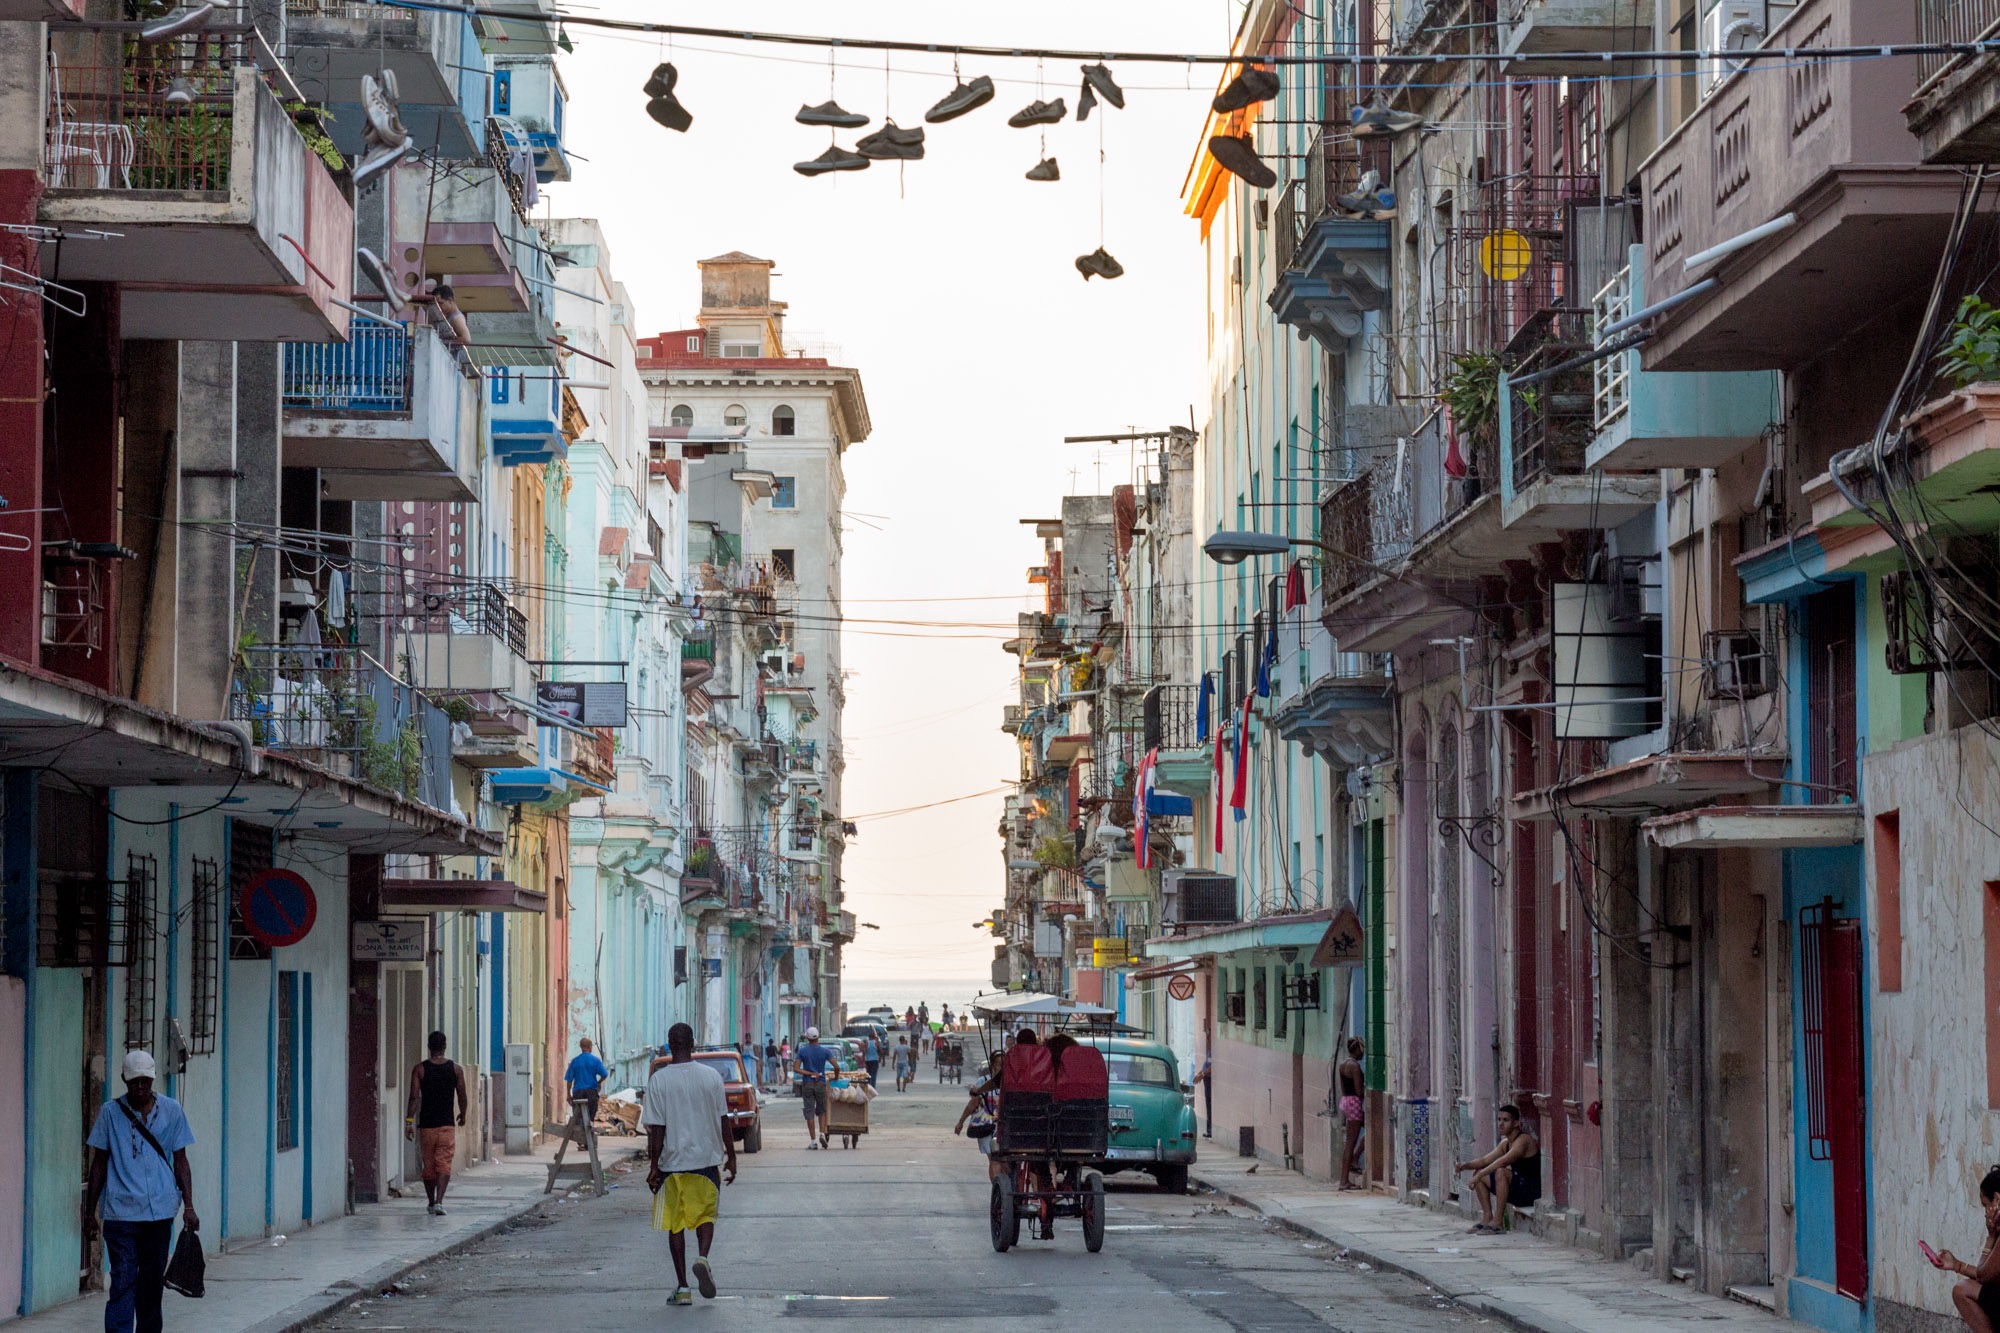 A street in Havana Cuba.